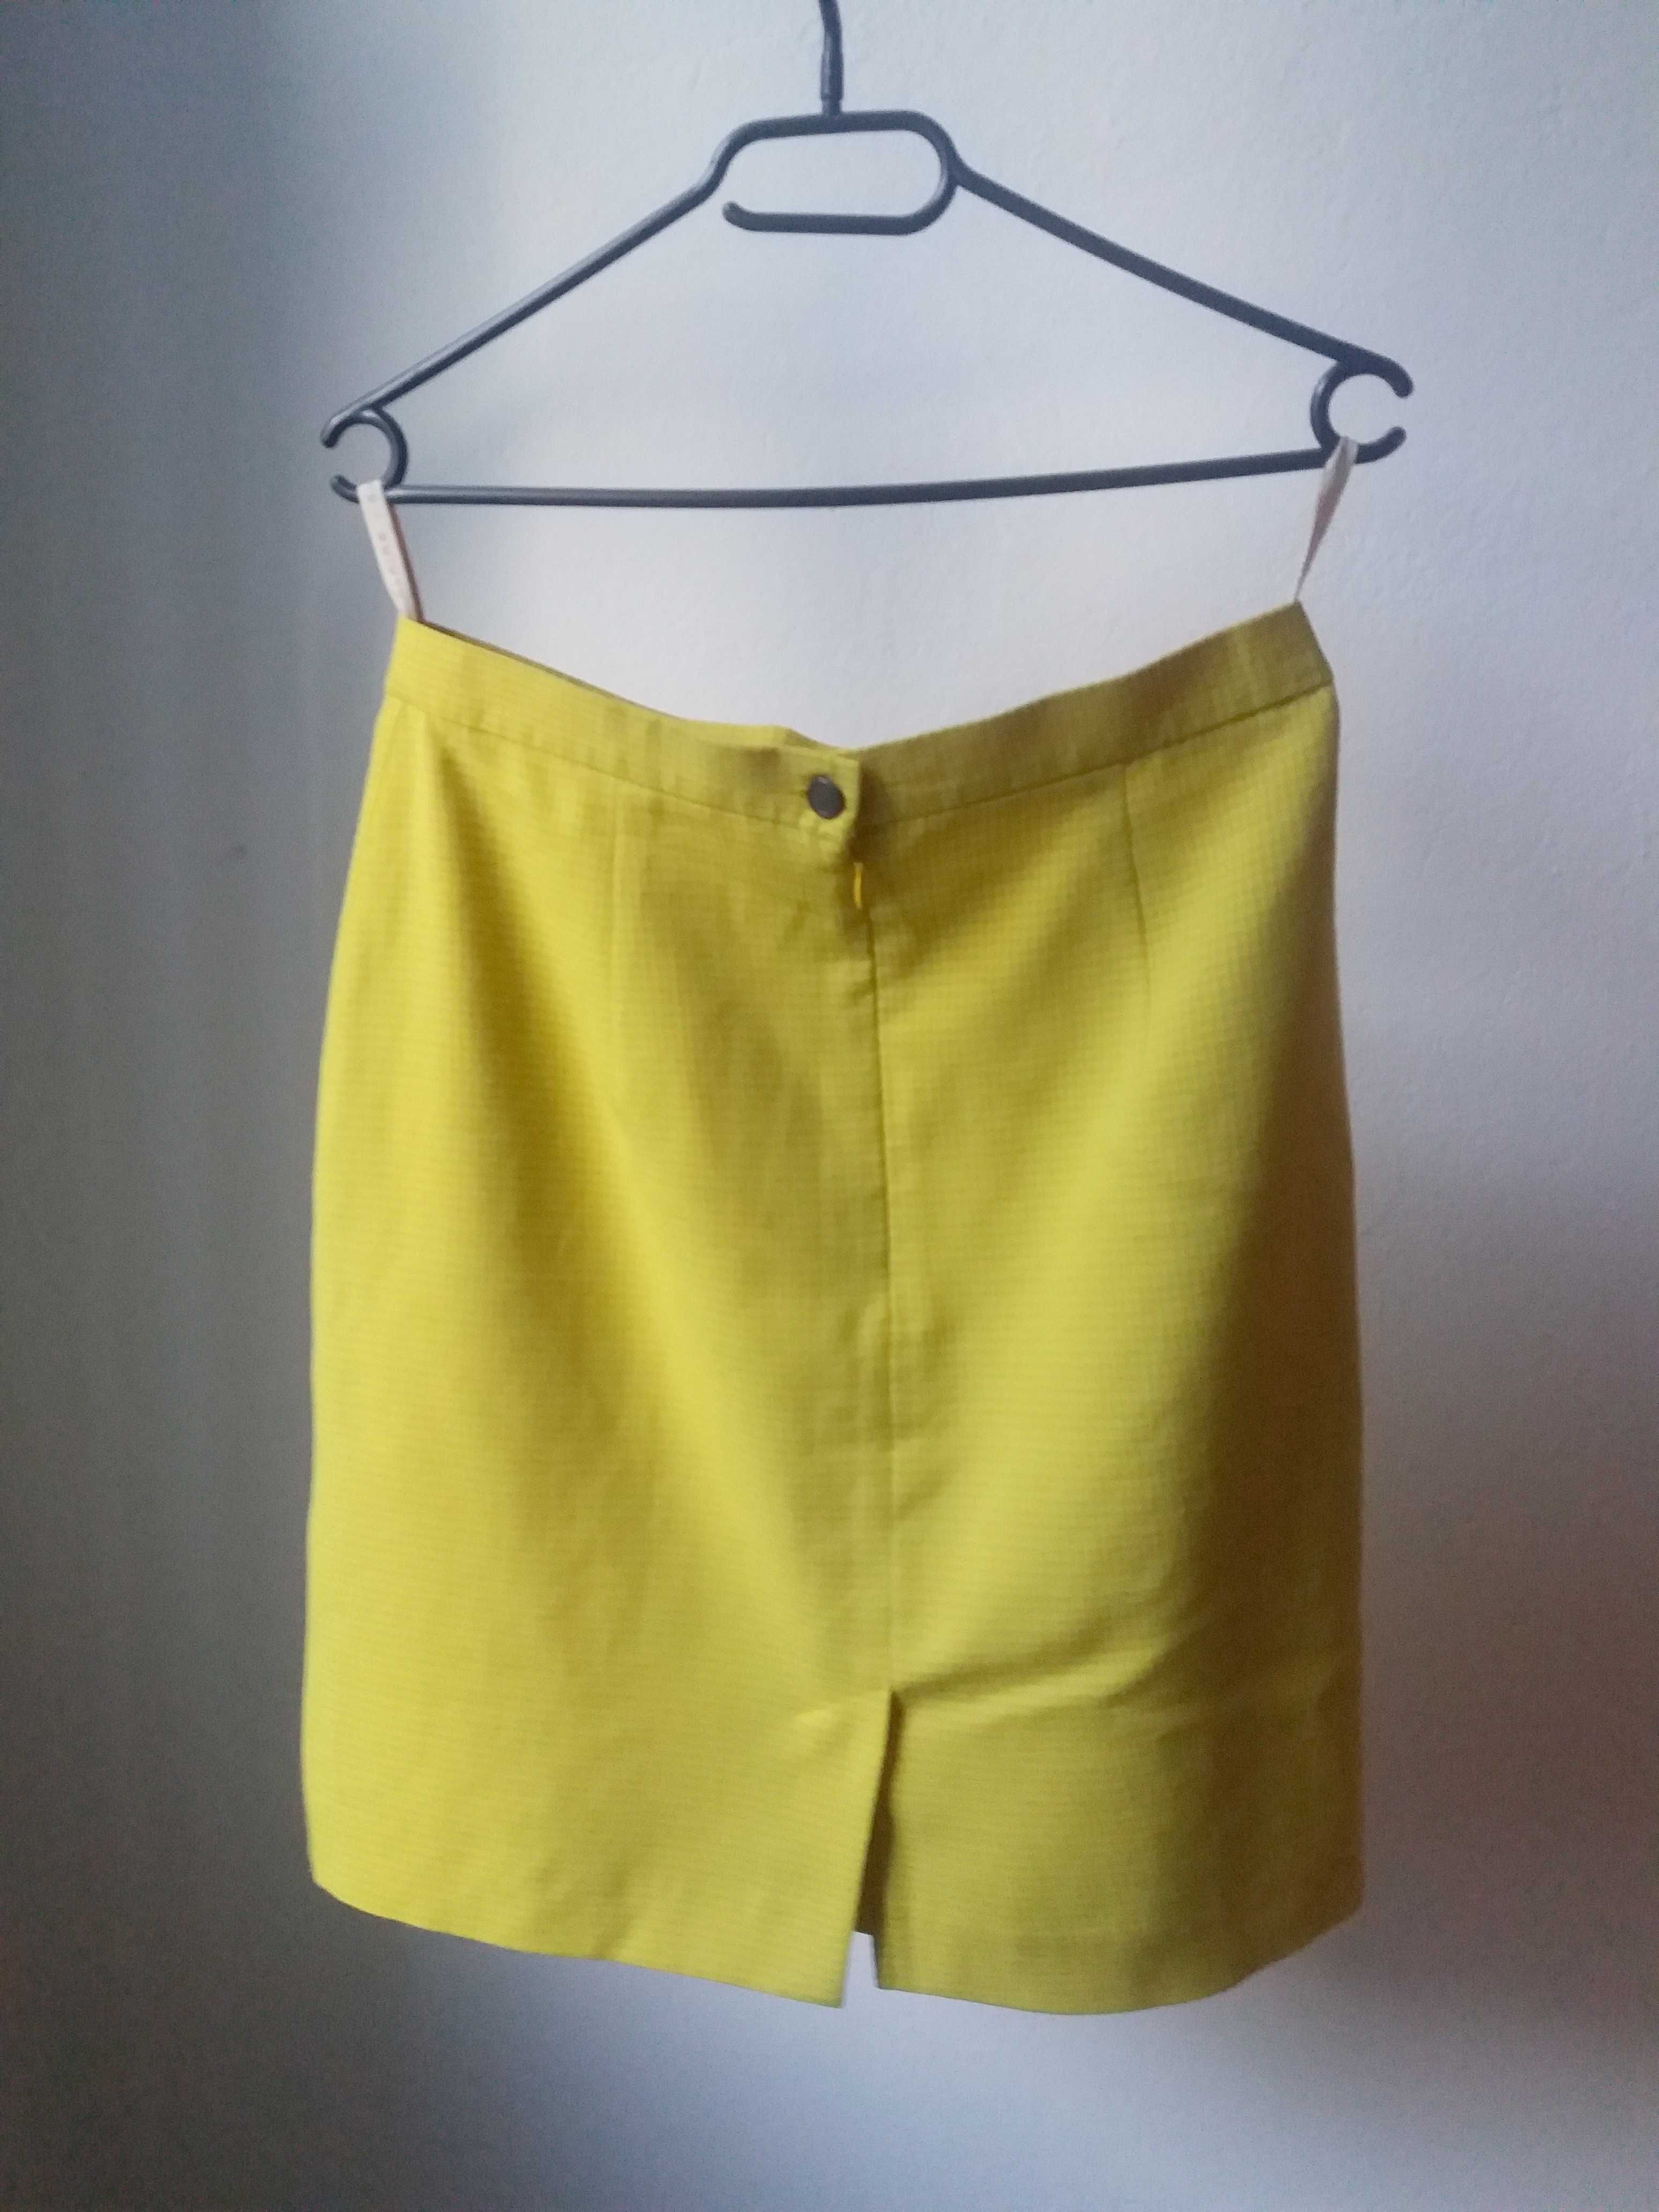 Spódnica ołówkowa cytrynowa żółta w kratkę Claire vintage retro